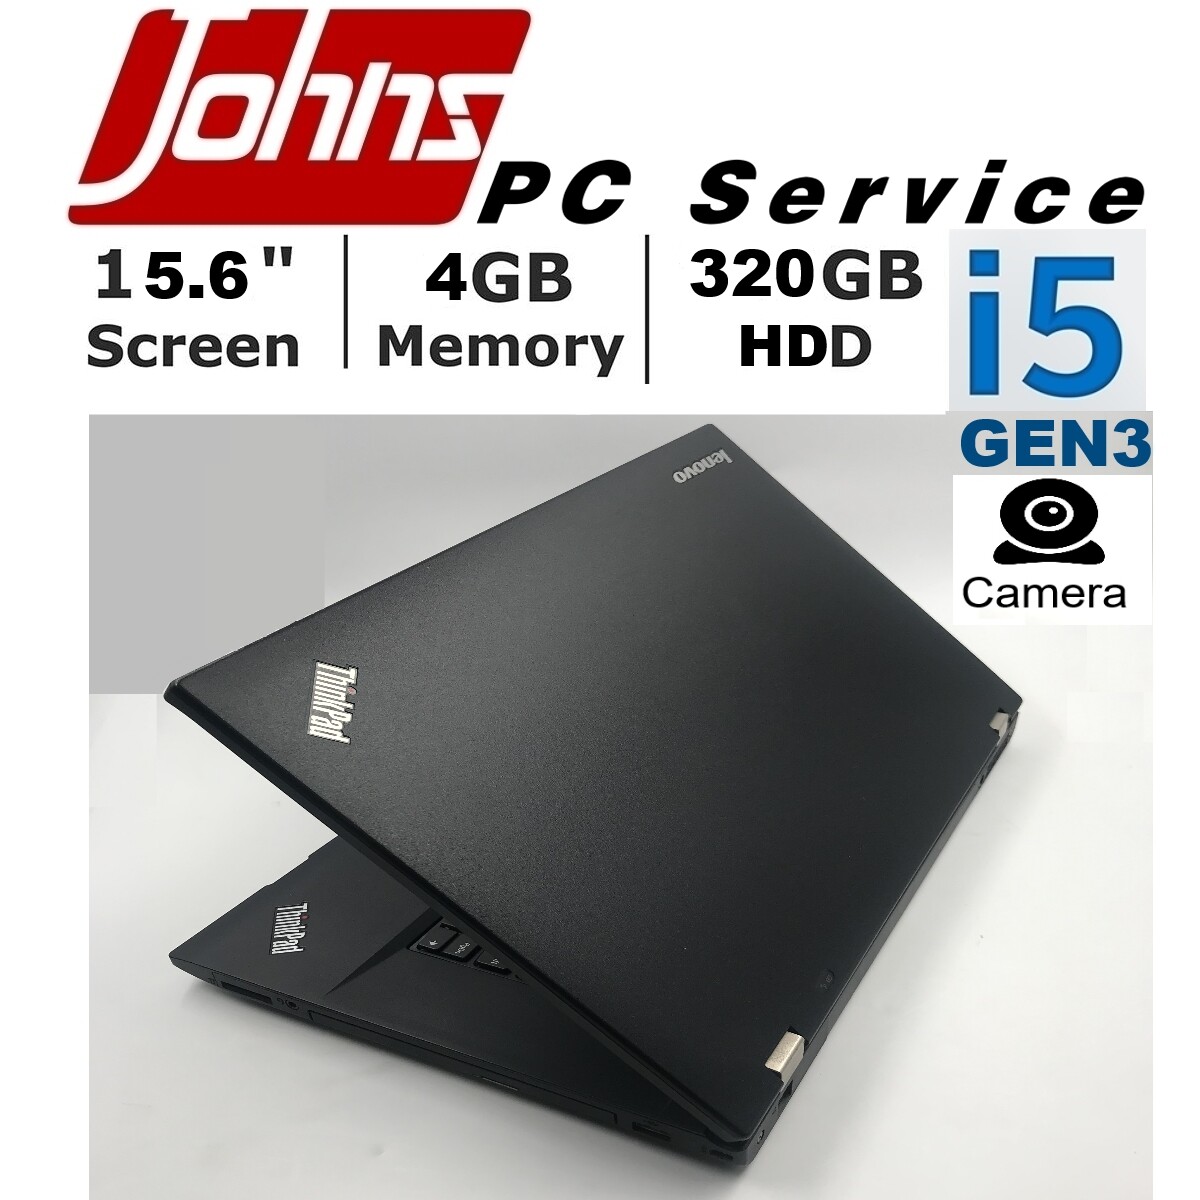 โน๊ตบุ๊คมือสอง Lenovo Thinkpad L530 I5 Gen3 //toshiba S500/r732 ราคาถูกๆ โน๊ตบุ๊ค Laptop มือสอง โน็ตบุ๊คมือ2 โน้ตบุ๊คถูกๆ โน๊ตบุ๊คมือสอง2. 